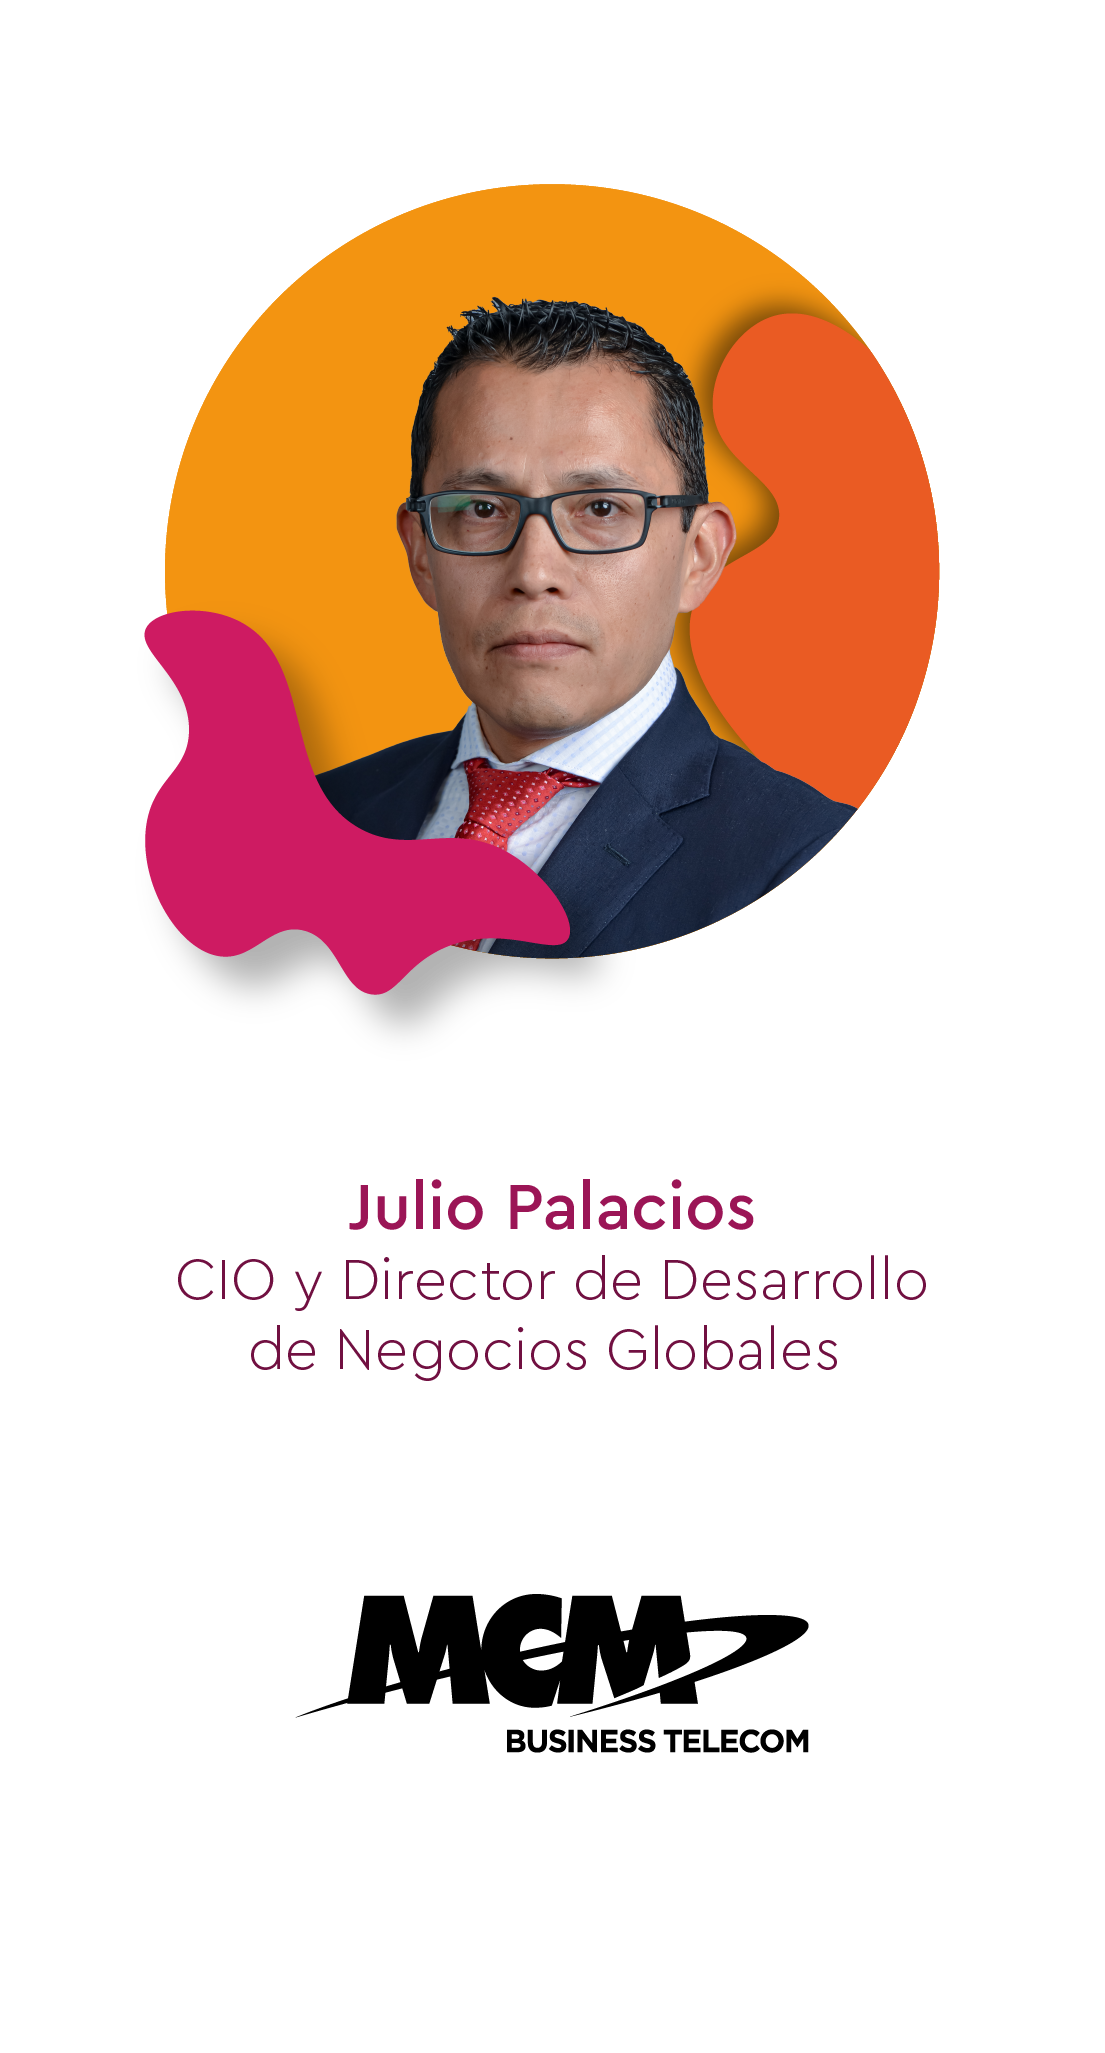 Julio Palacios